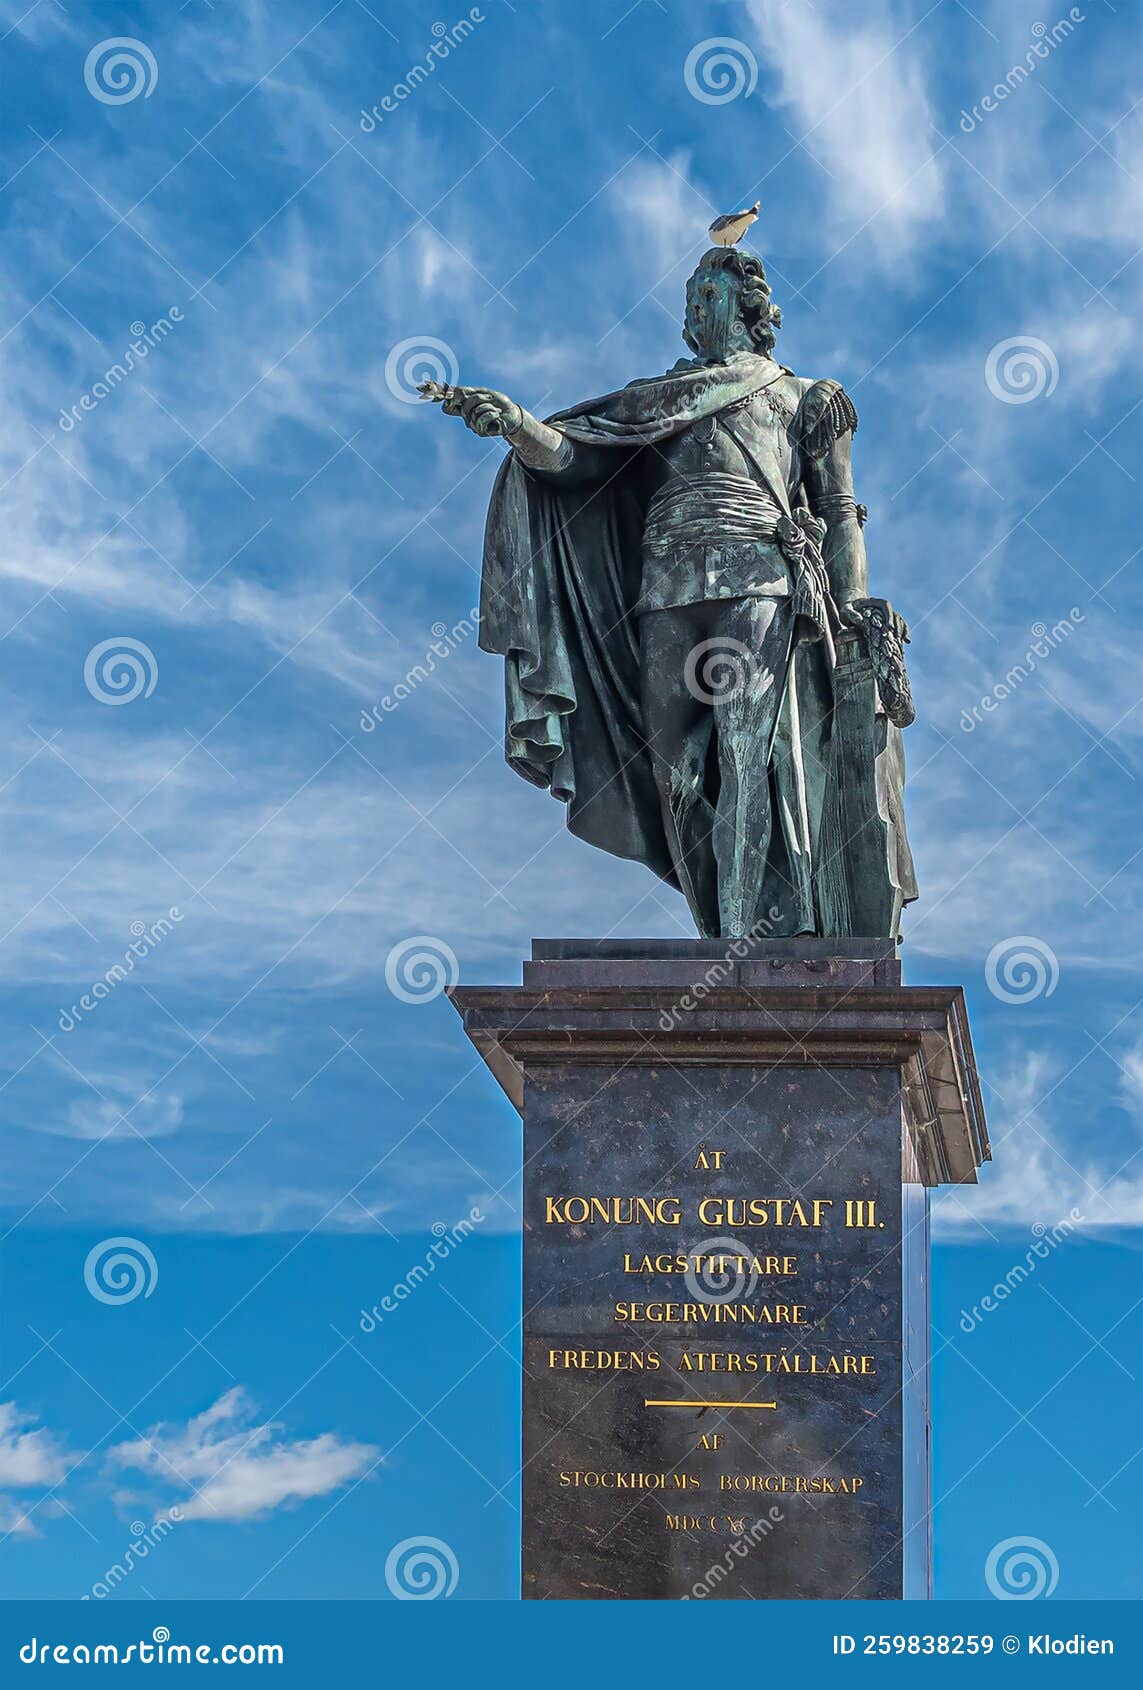 gustav iii statue on pedestal, skeppsbron quay, stockholm, sweden